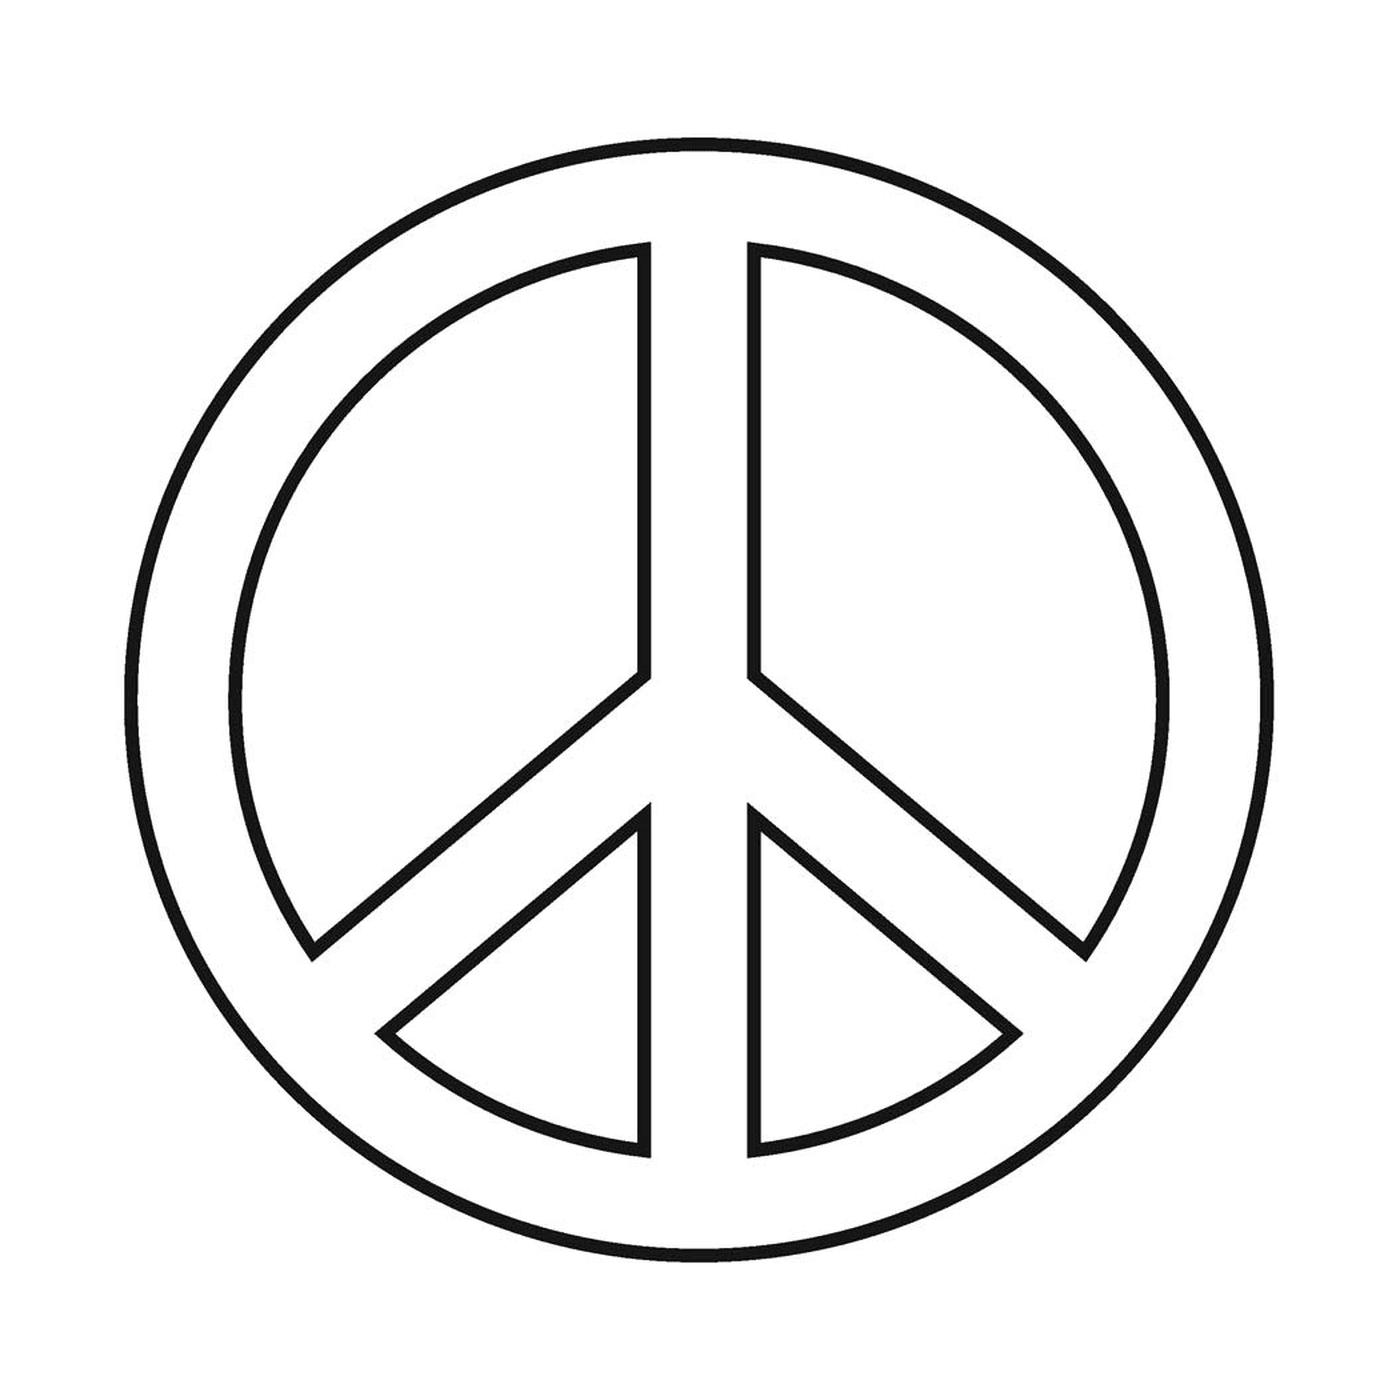  Signo de paz, logotipo 